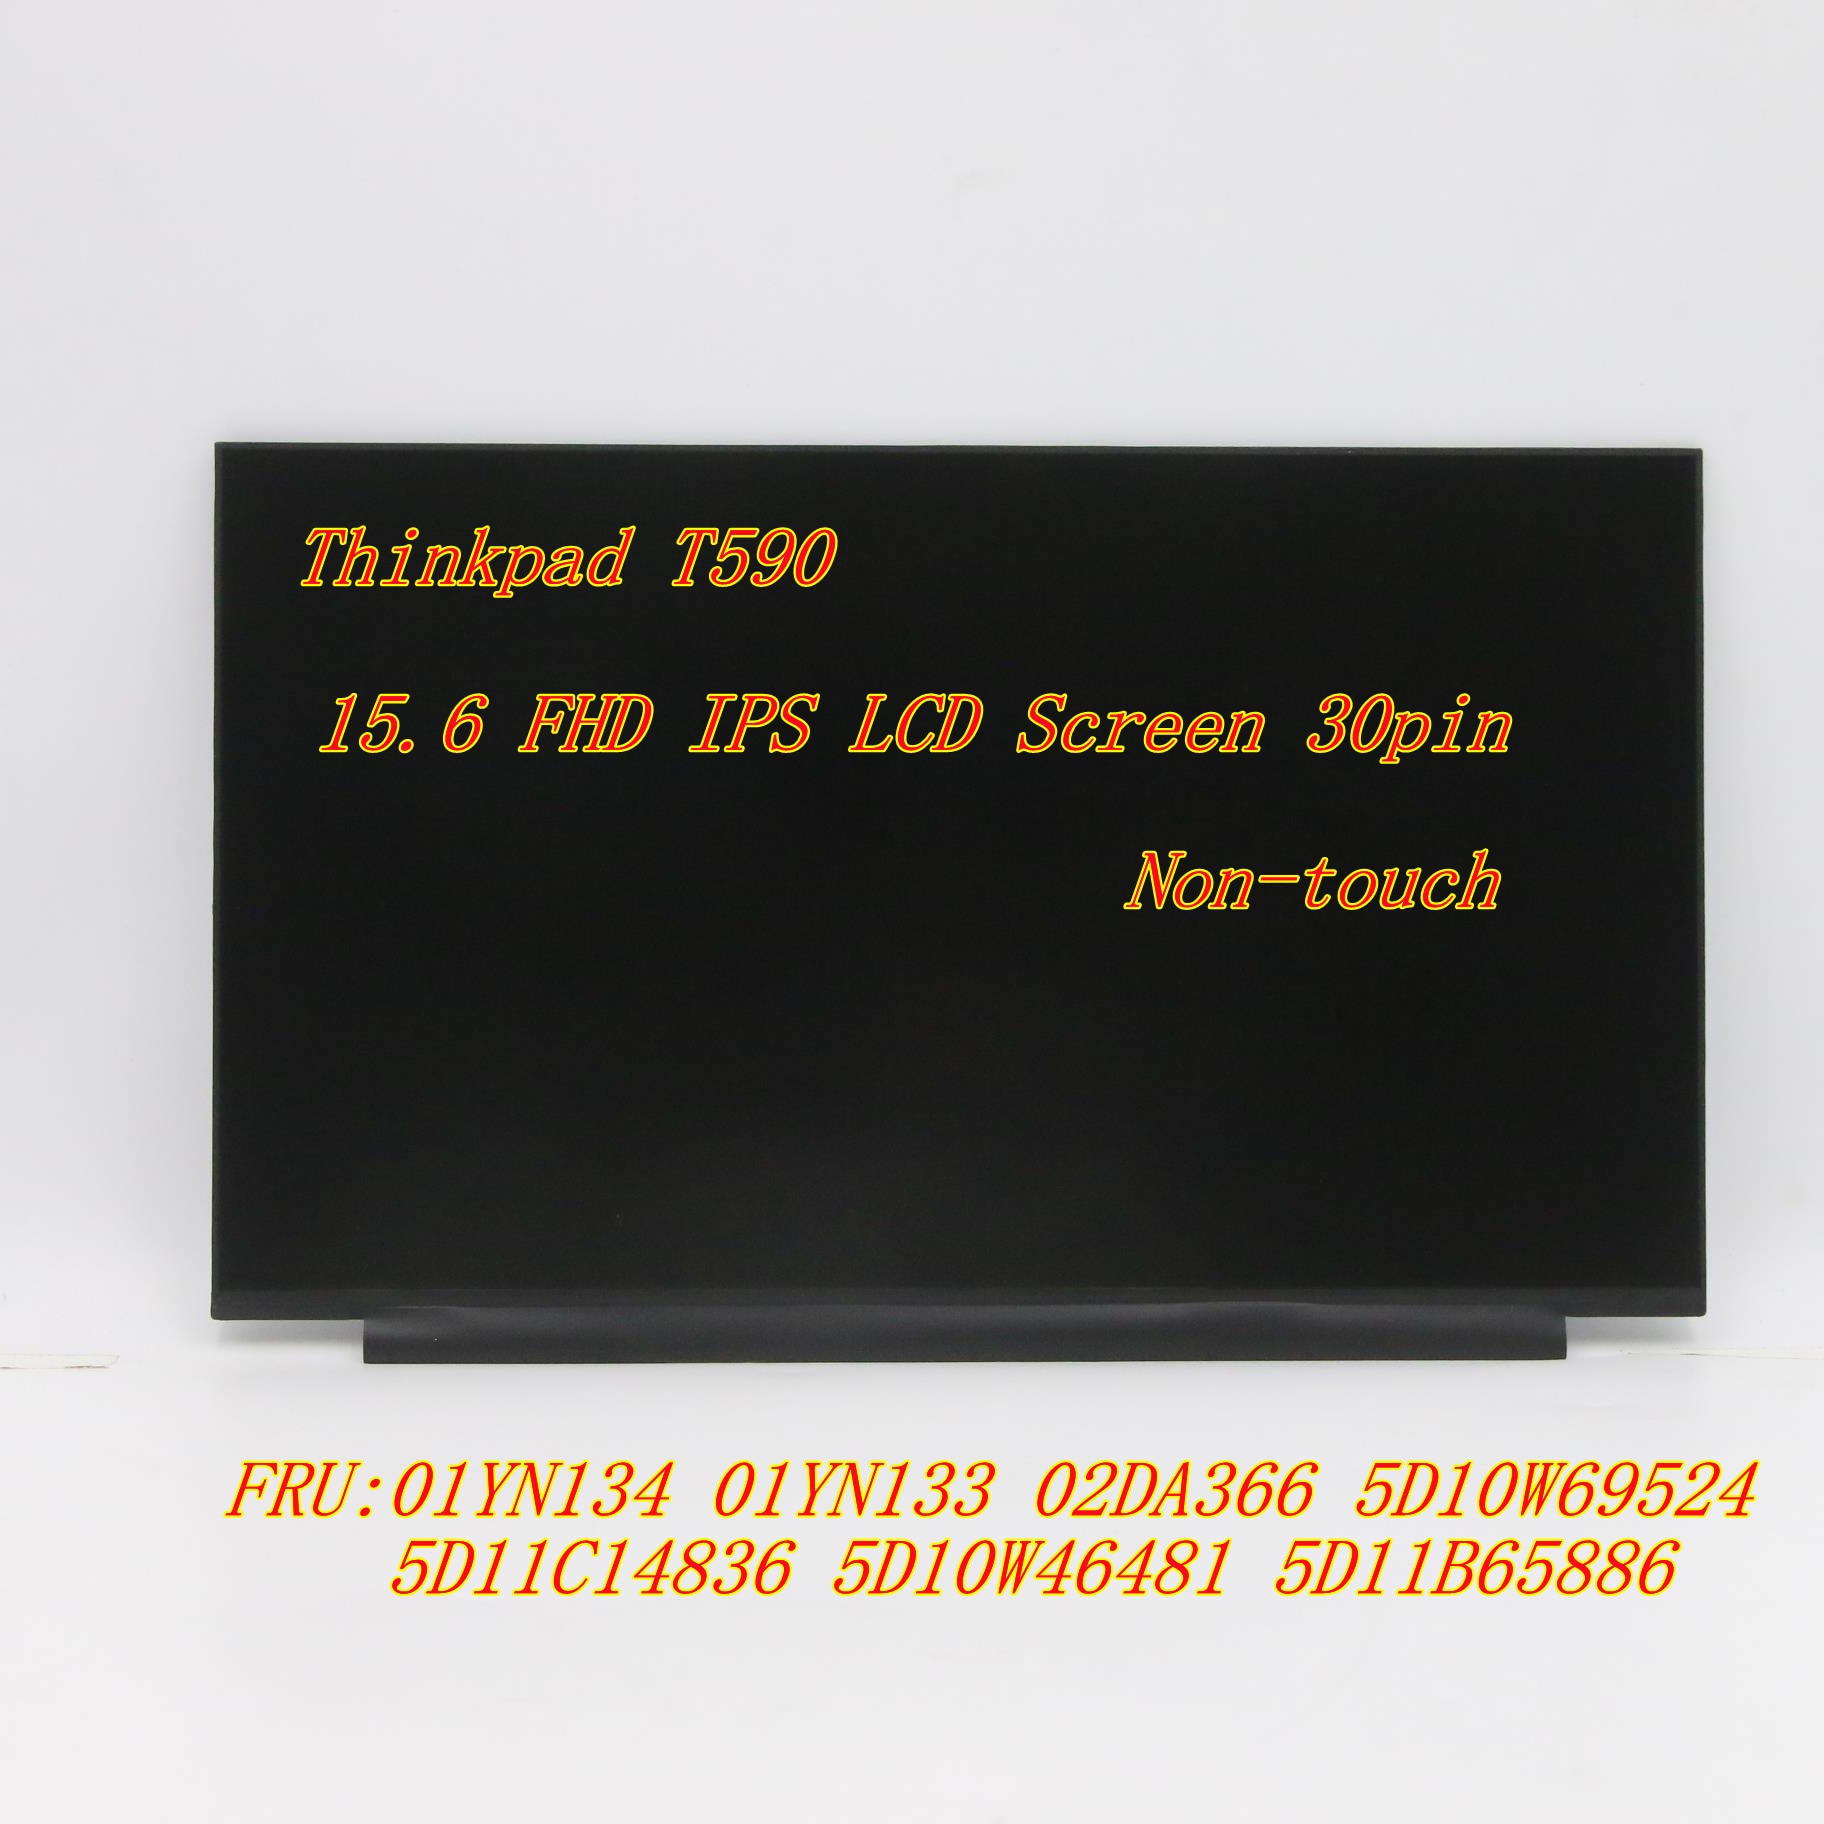 ο 15.6 FHD IPS LCD ũ 30pin  Thinkpad..